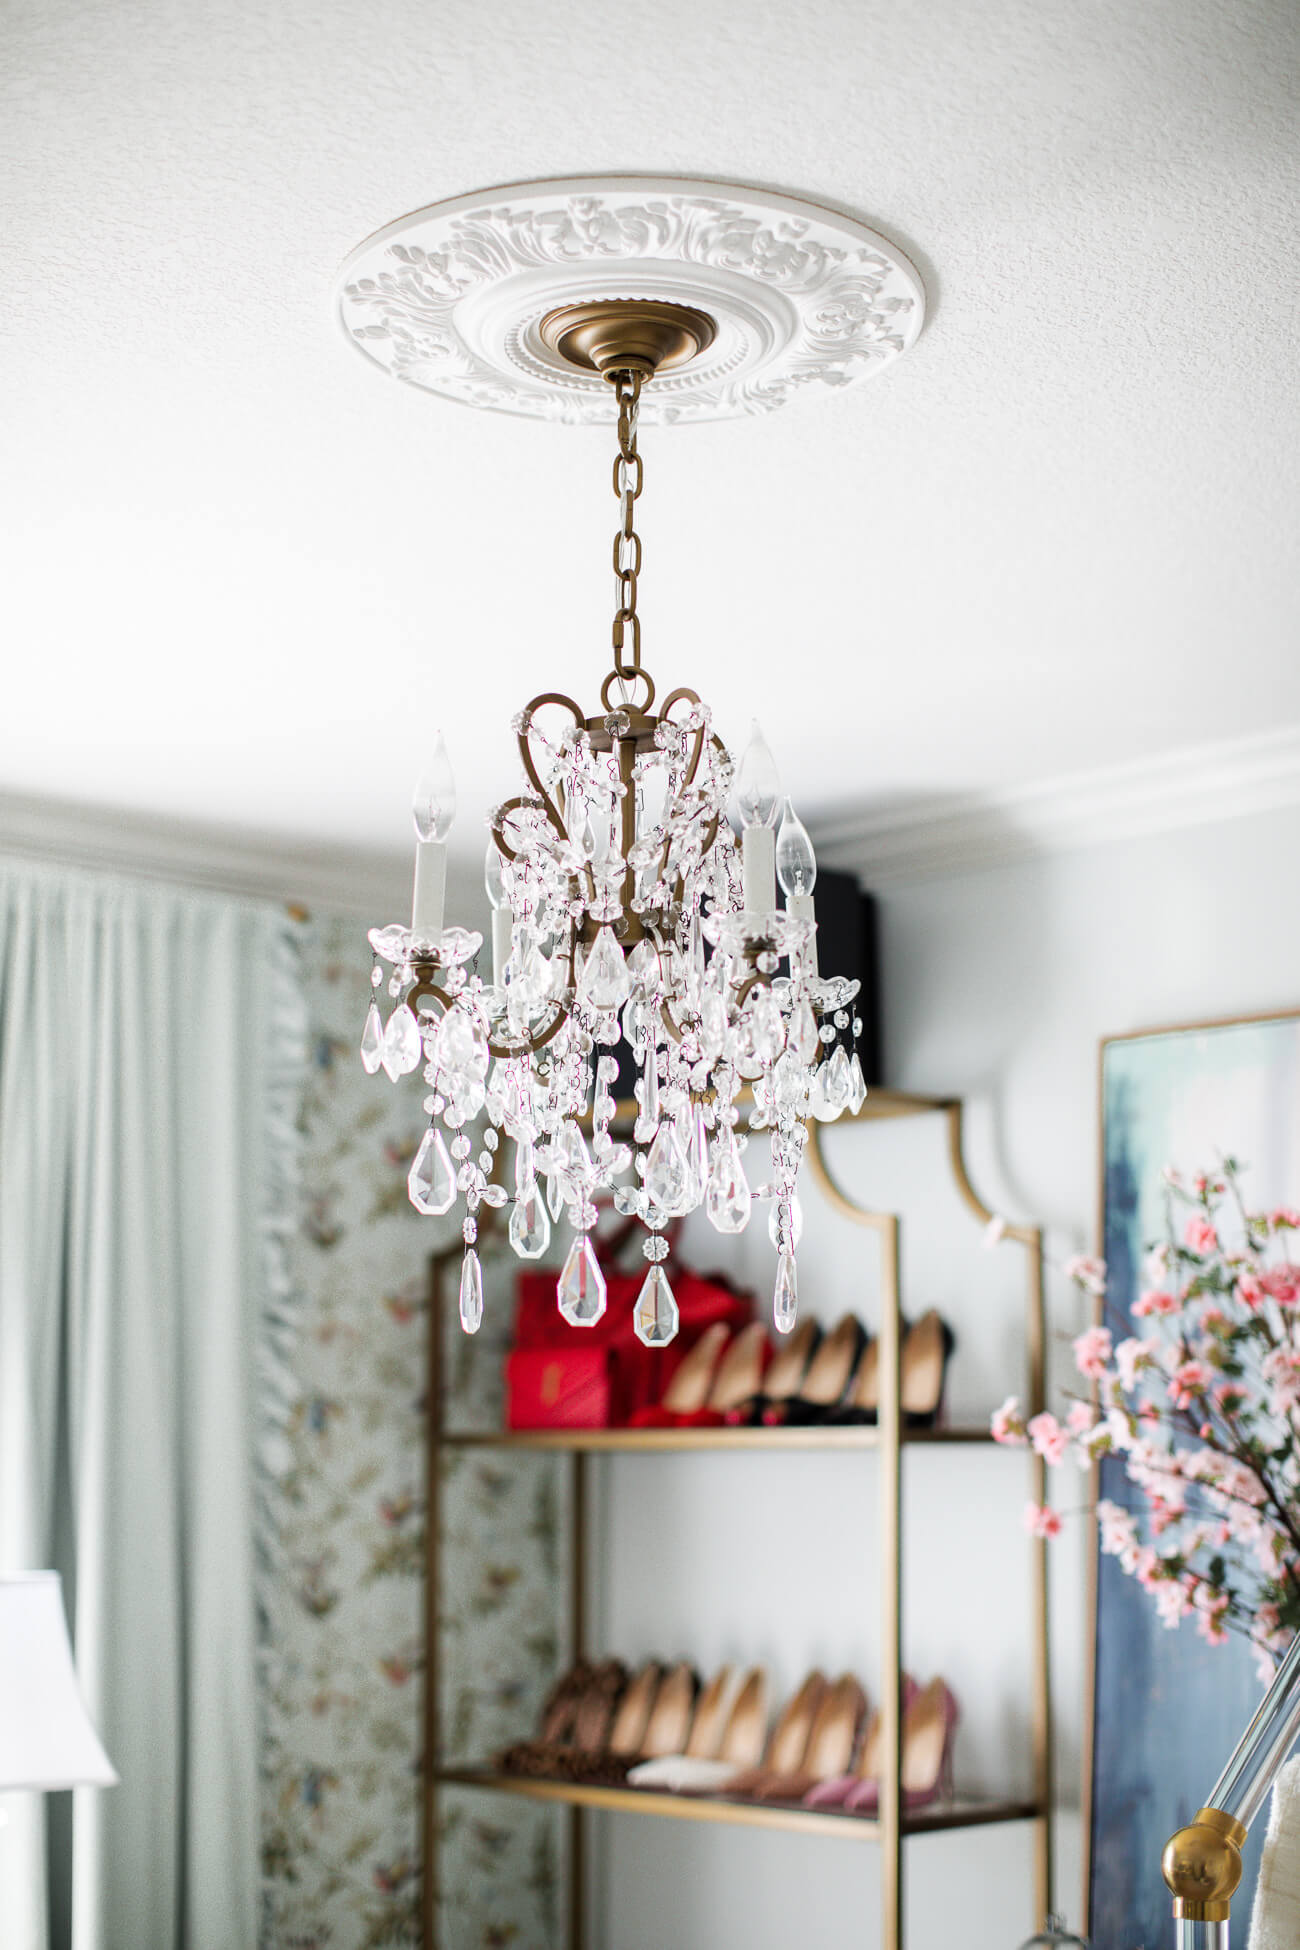 restoration hardware chandelier in fashion blogger's office